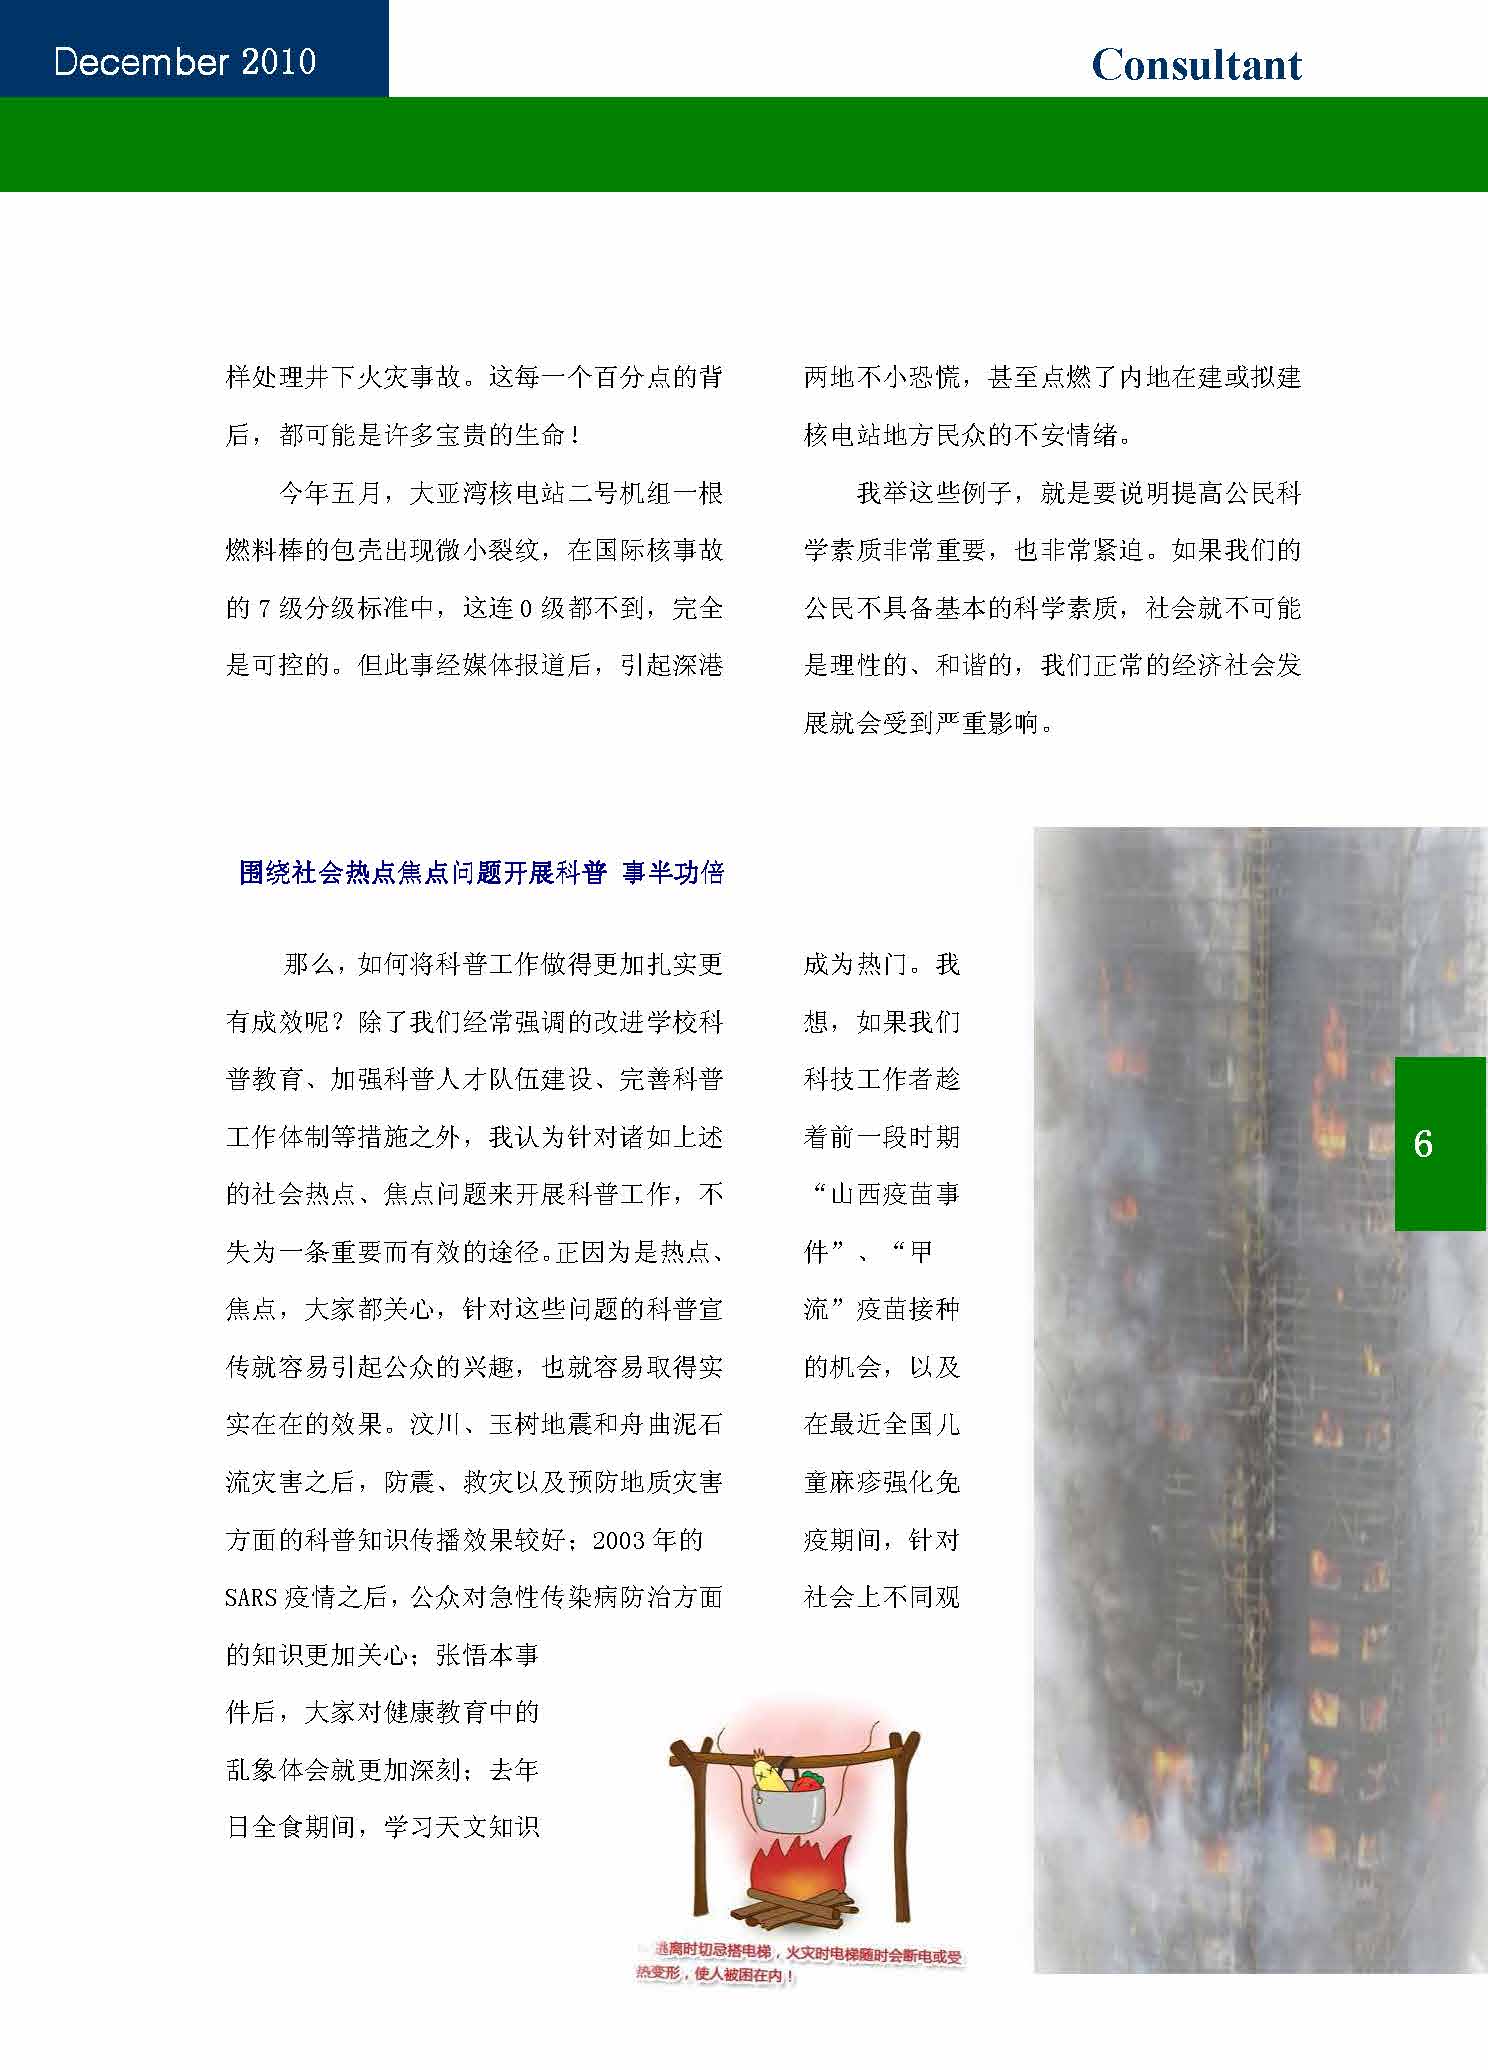 13中国科技咨询协会第十三期会刊_页面_08.jpg